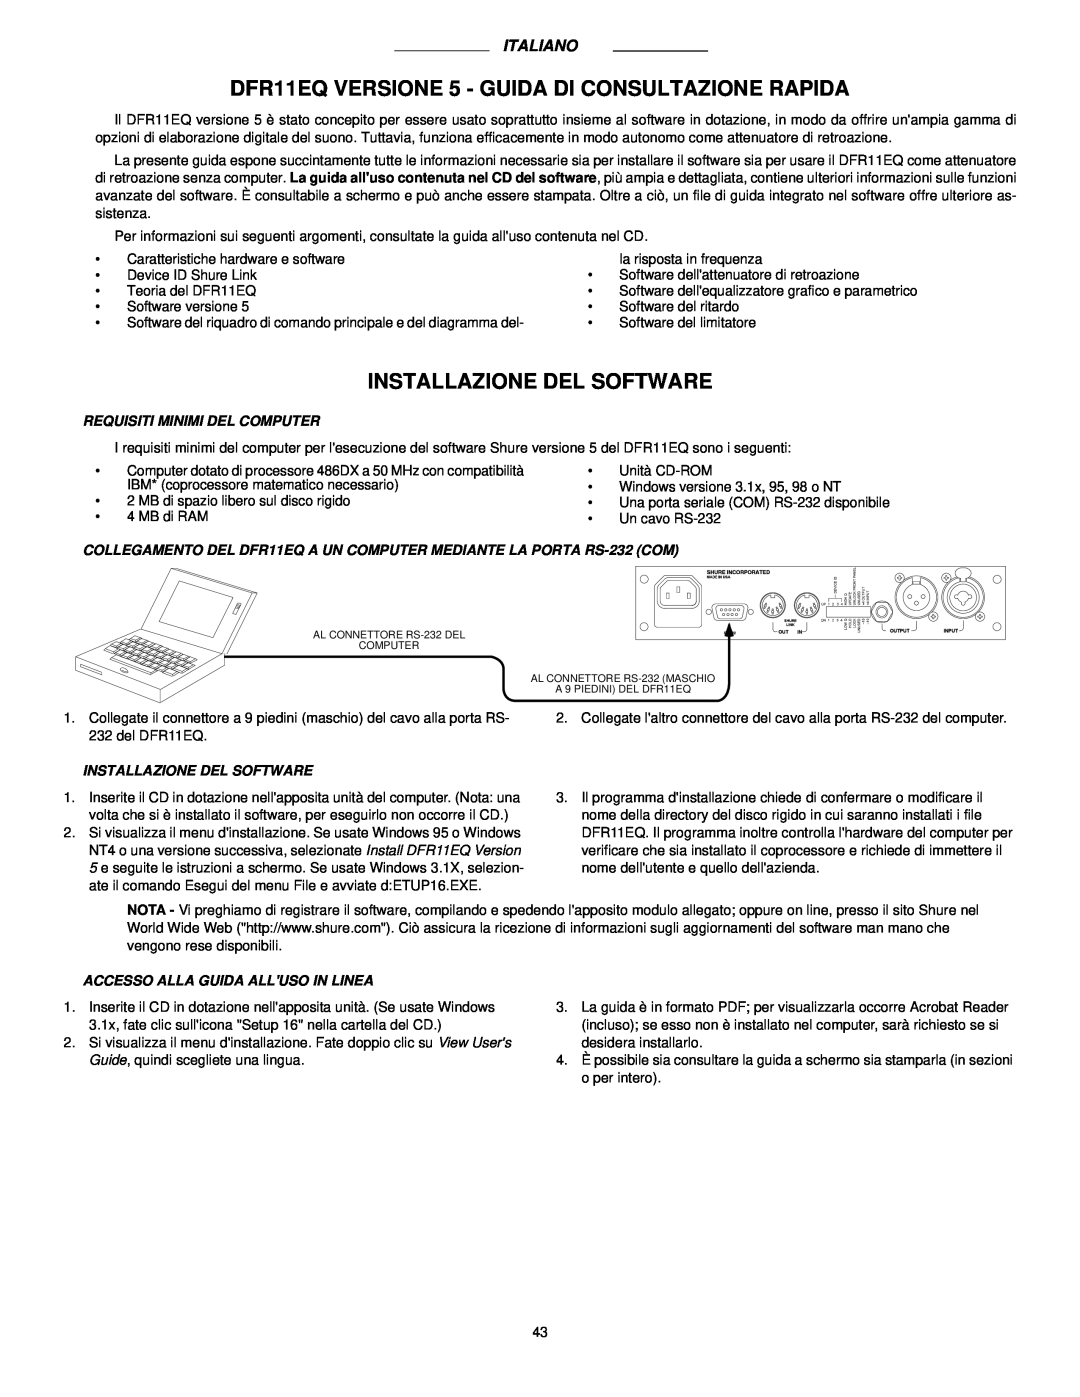 Shure DFR11EQ VERSION 5 manual Installazione Del Software, Italiano, Requisiti Minimi Del Computer 